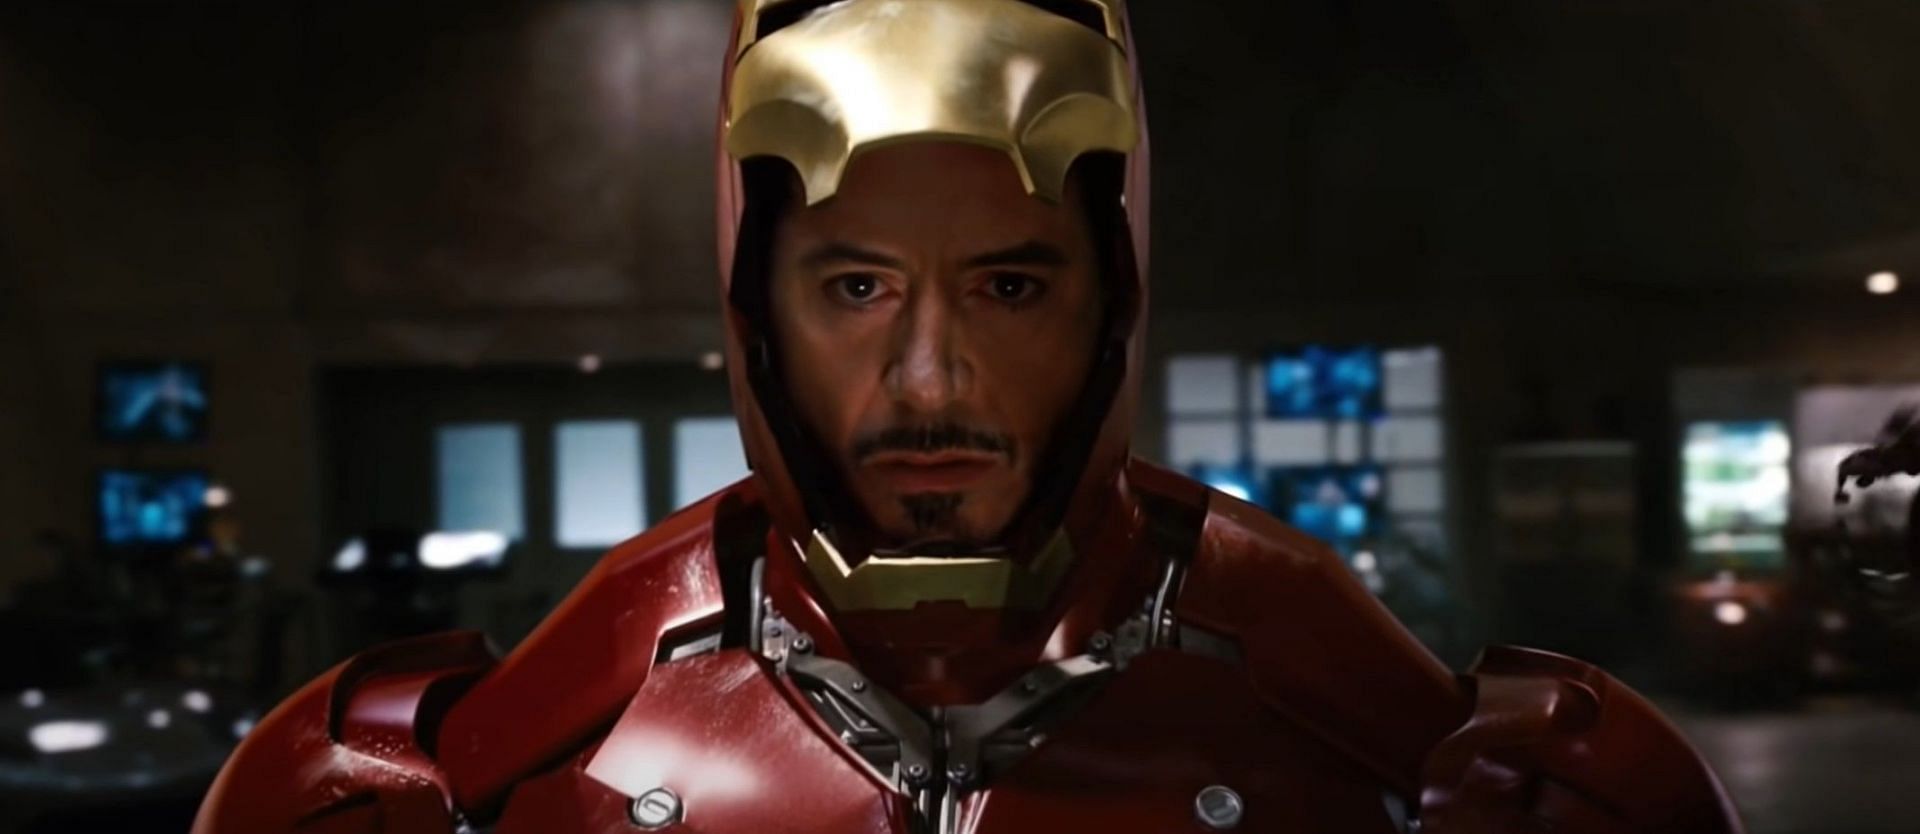 Will any story bring back Tony Stark? (Image via marvel)